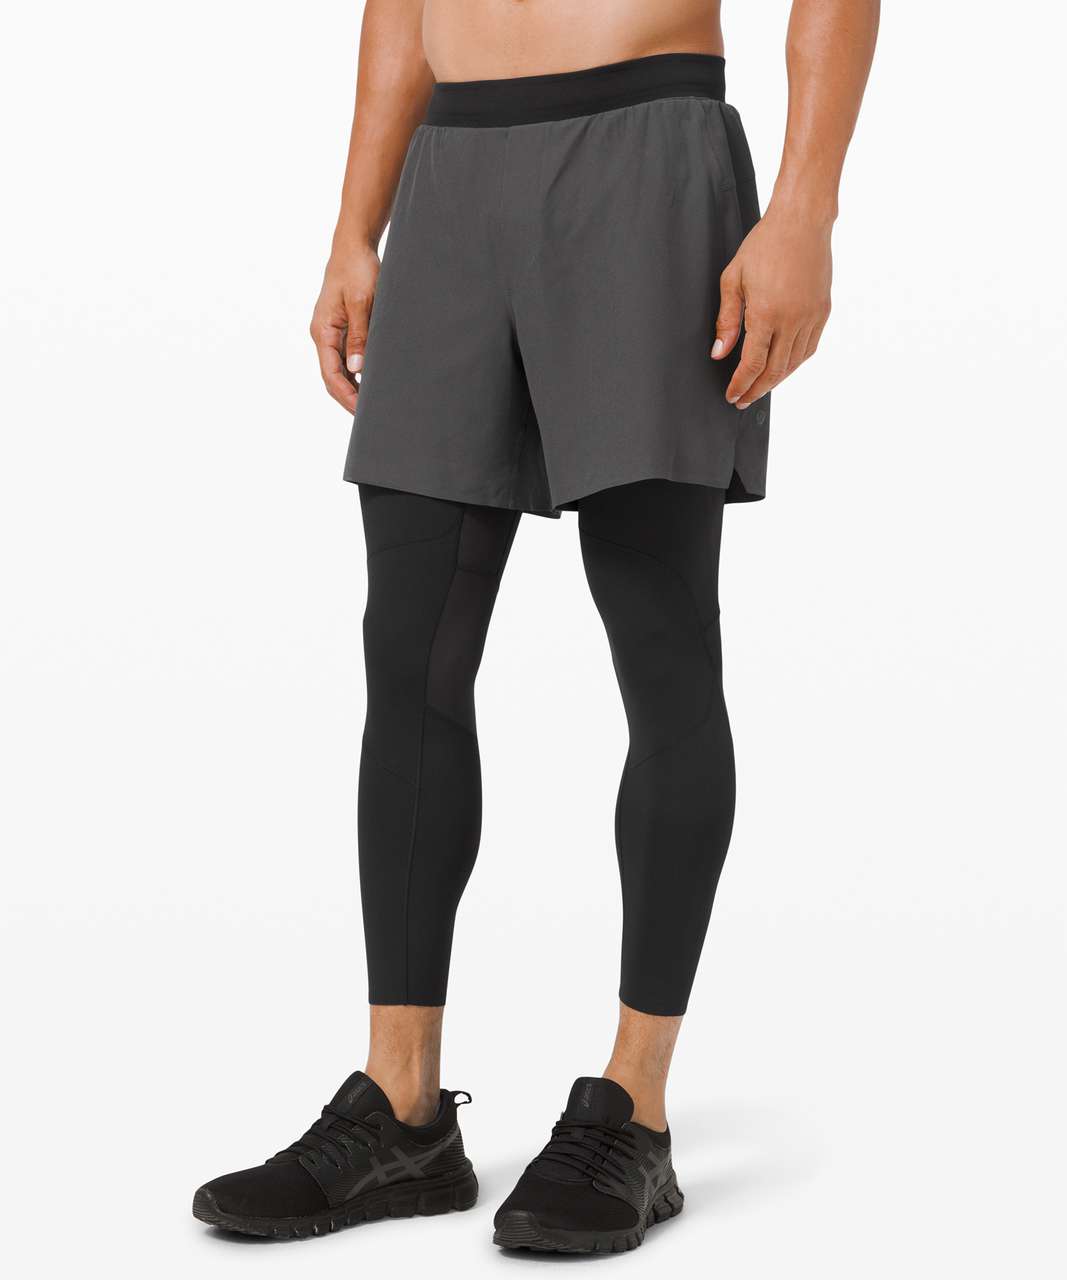 Lululemon Athletic Gym Running Shorts Black C50416 Men's Size XL